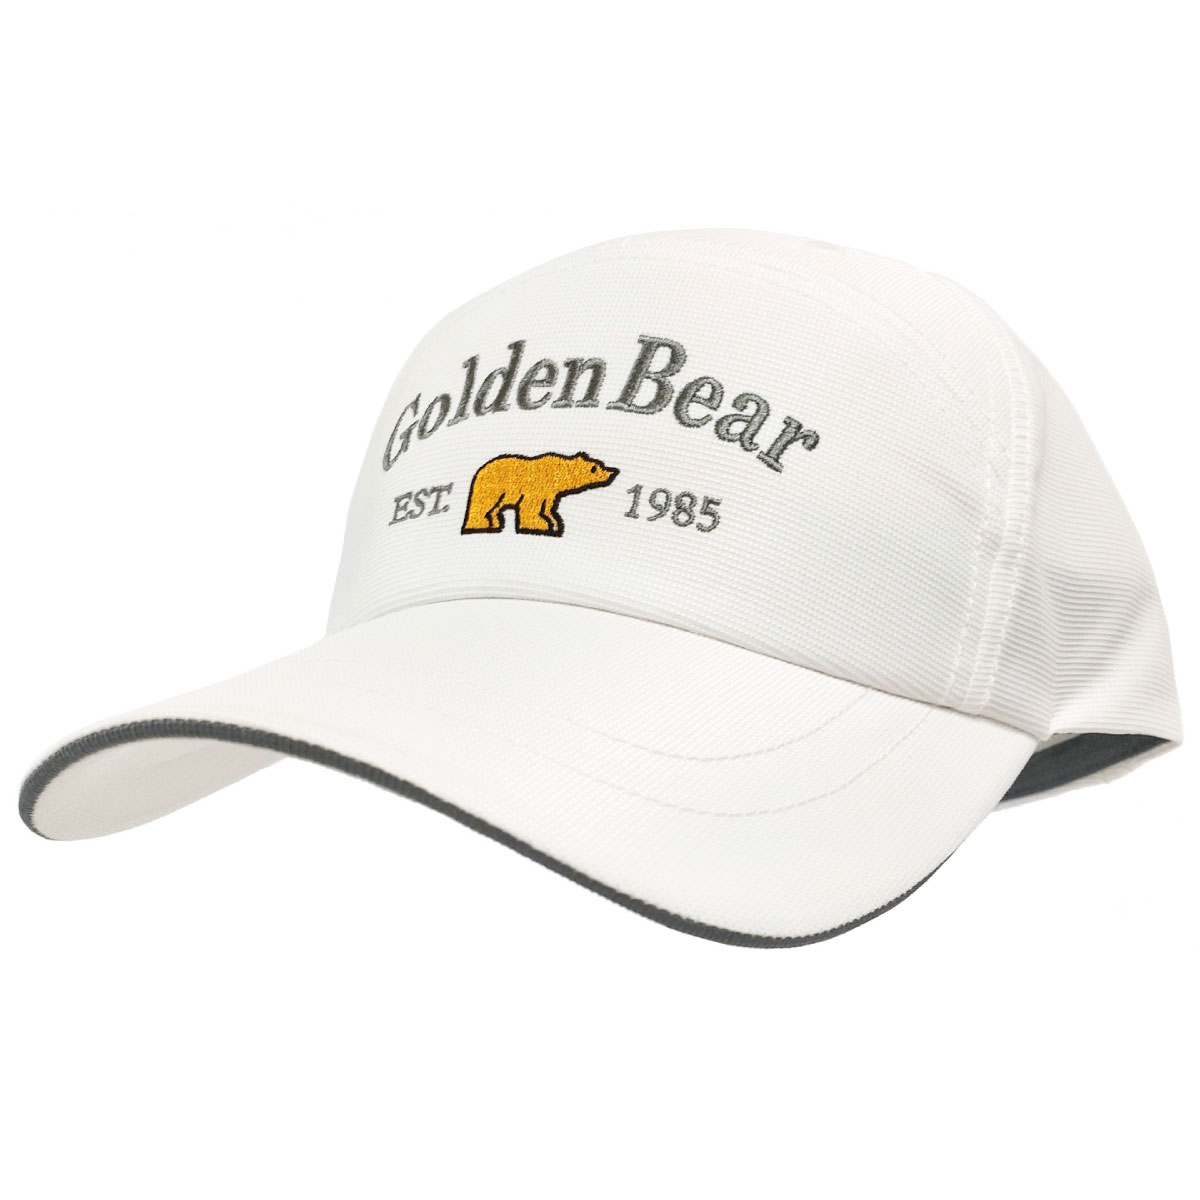 Golden Bear 帽子 洗える キャップ 小さい メンズ 軽い 涼しい 55cm-57cm サ...